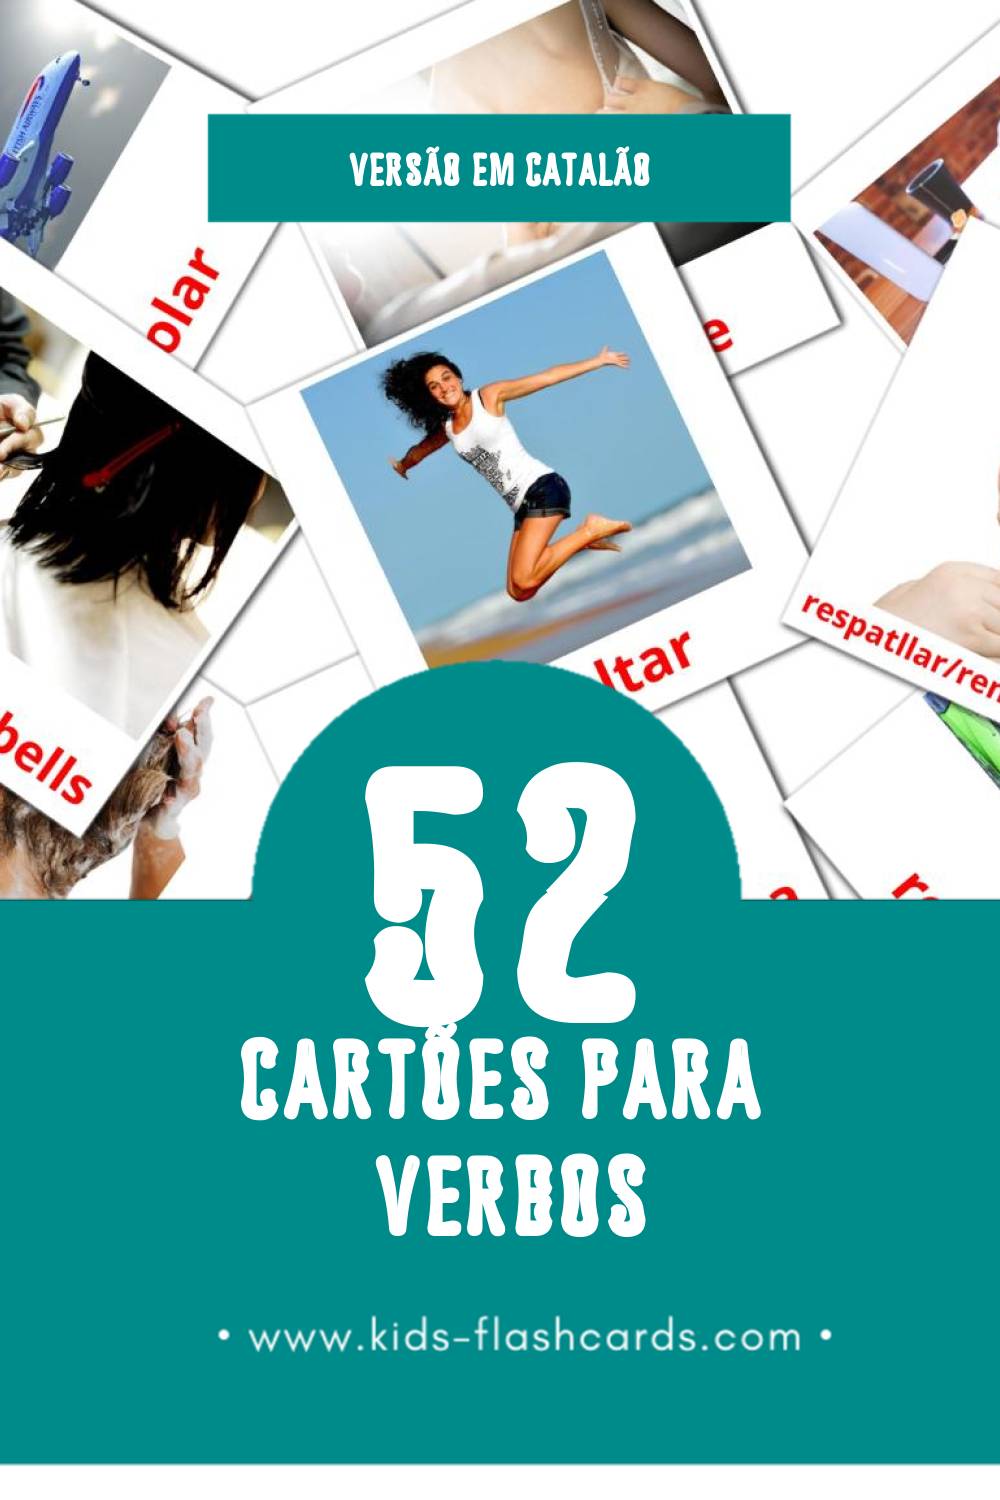 Flashcards de Verbs Visuais para Toddlers (52 cartões em Catalão)